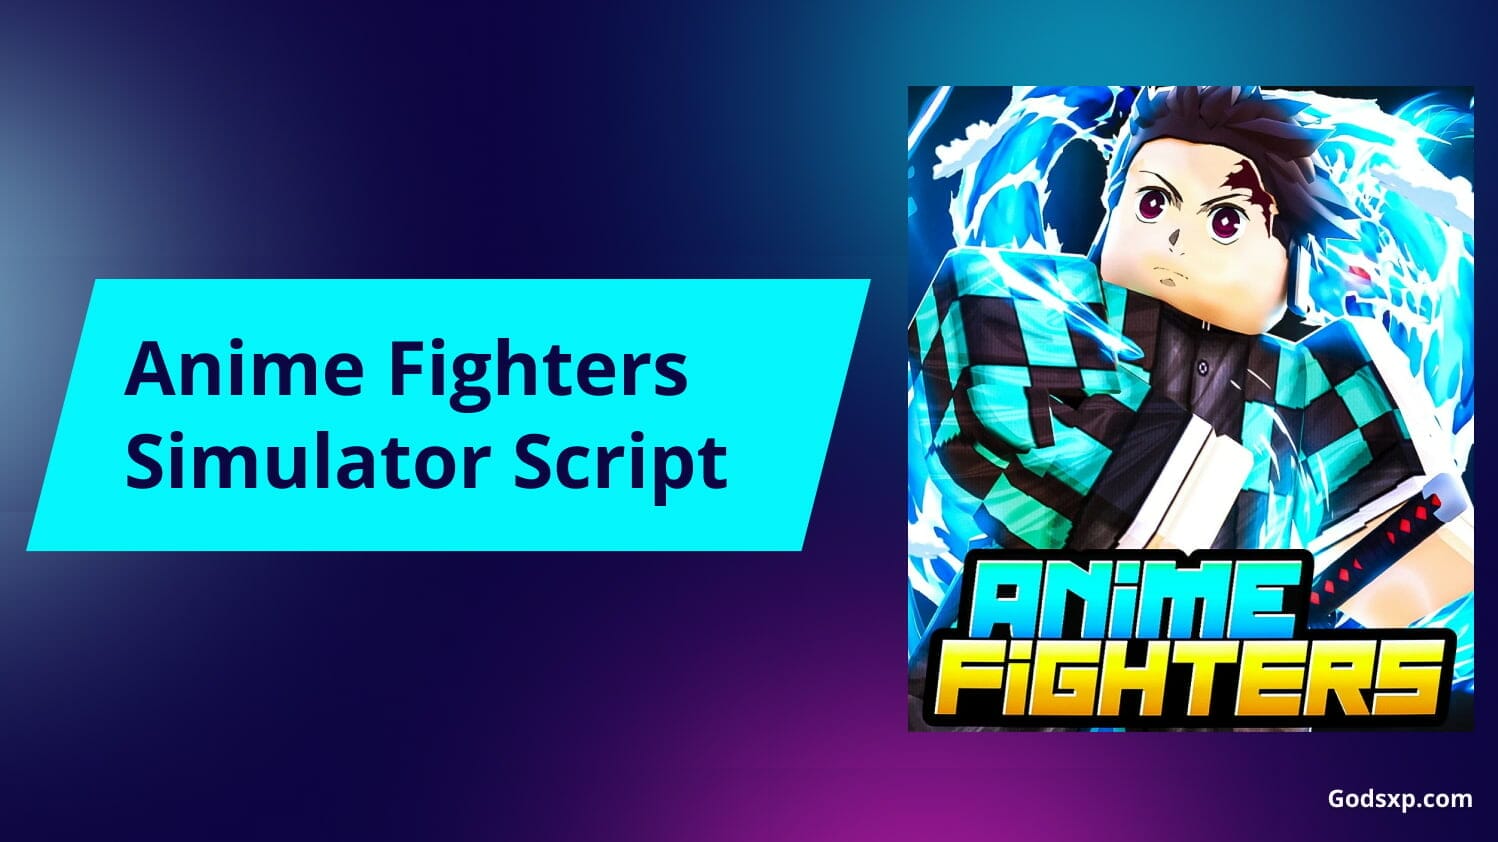 UPDATE* Anime Fighters Script, 2023